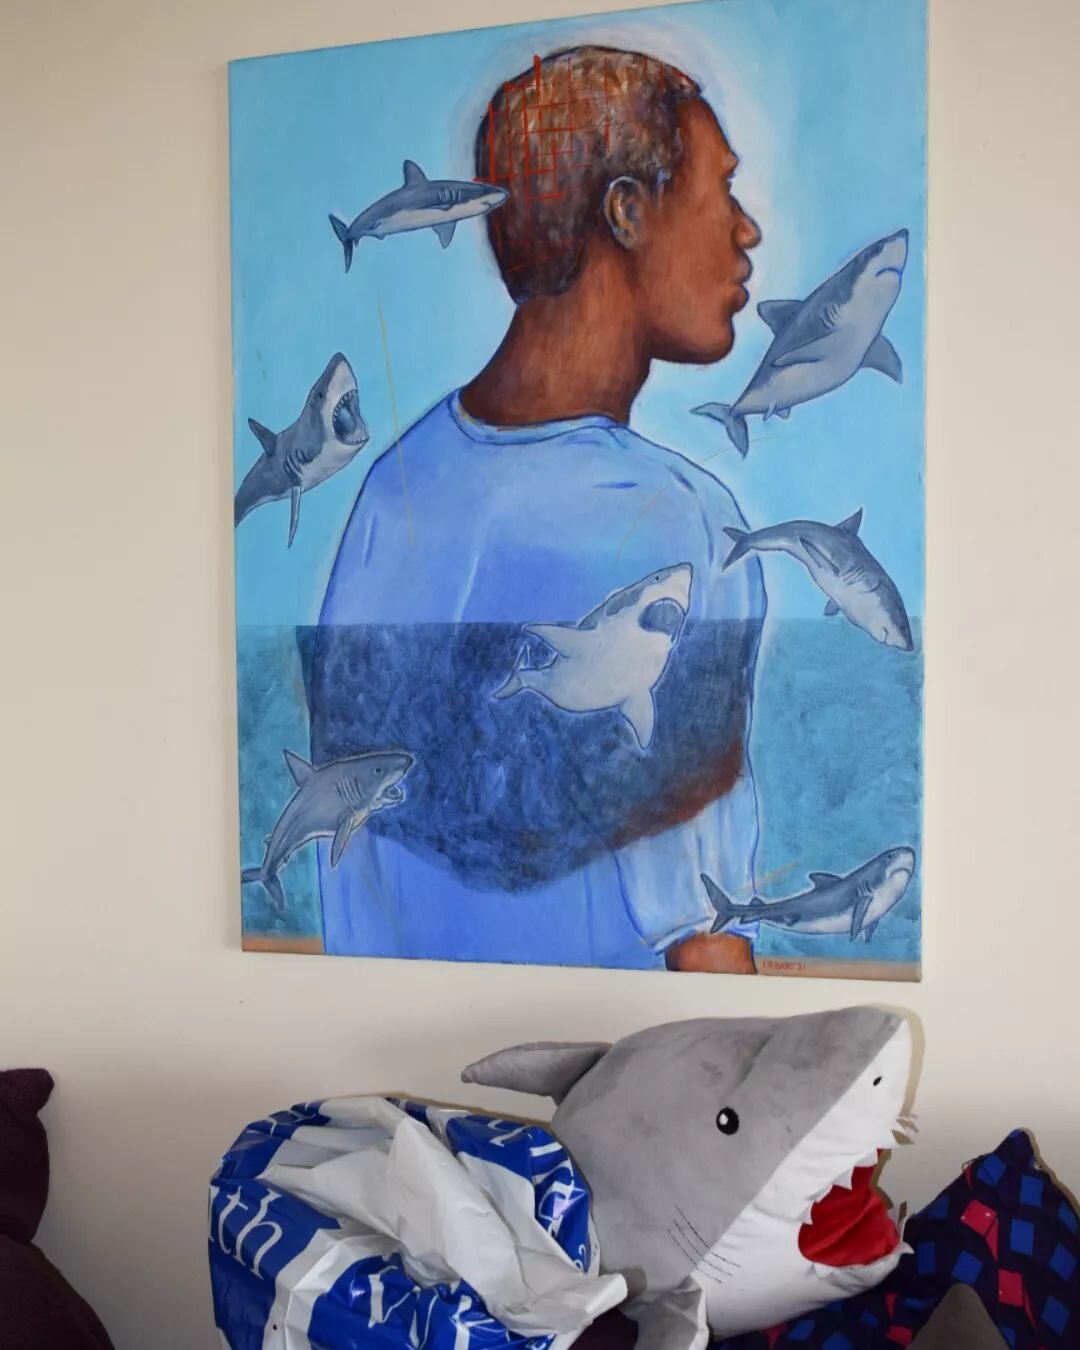 Shark infested waters 🌊🦈
Acrylics on canvas from last year.
.
.
.
#contemporaryartist #contemporaryart #sharks #africanart #londonartist #expressionism #basquiat #matisse #portraitpainting #portraits #artwork #abstractart #modernart #modernartist